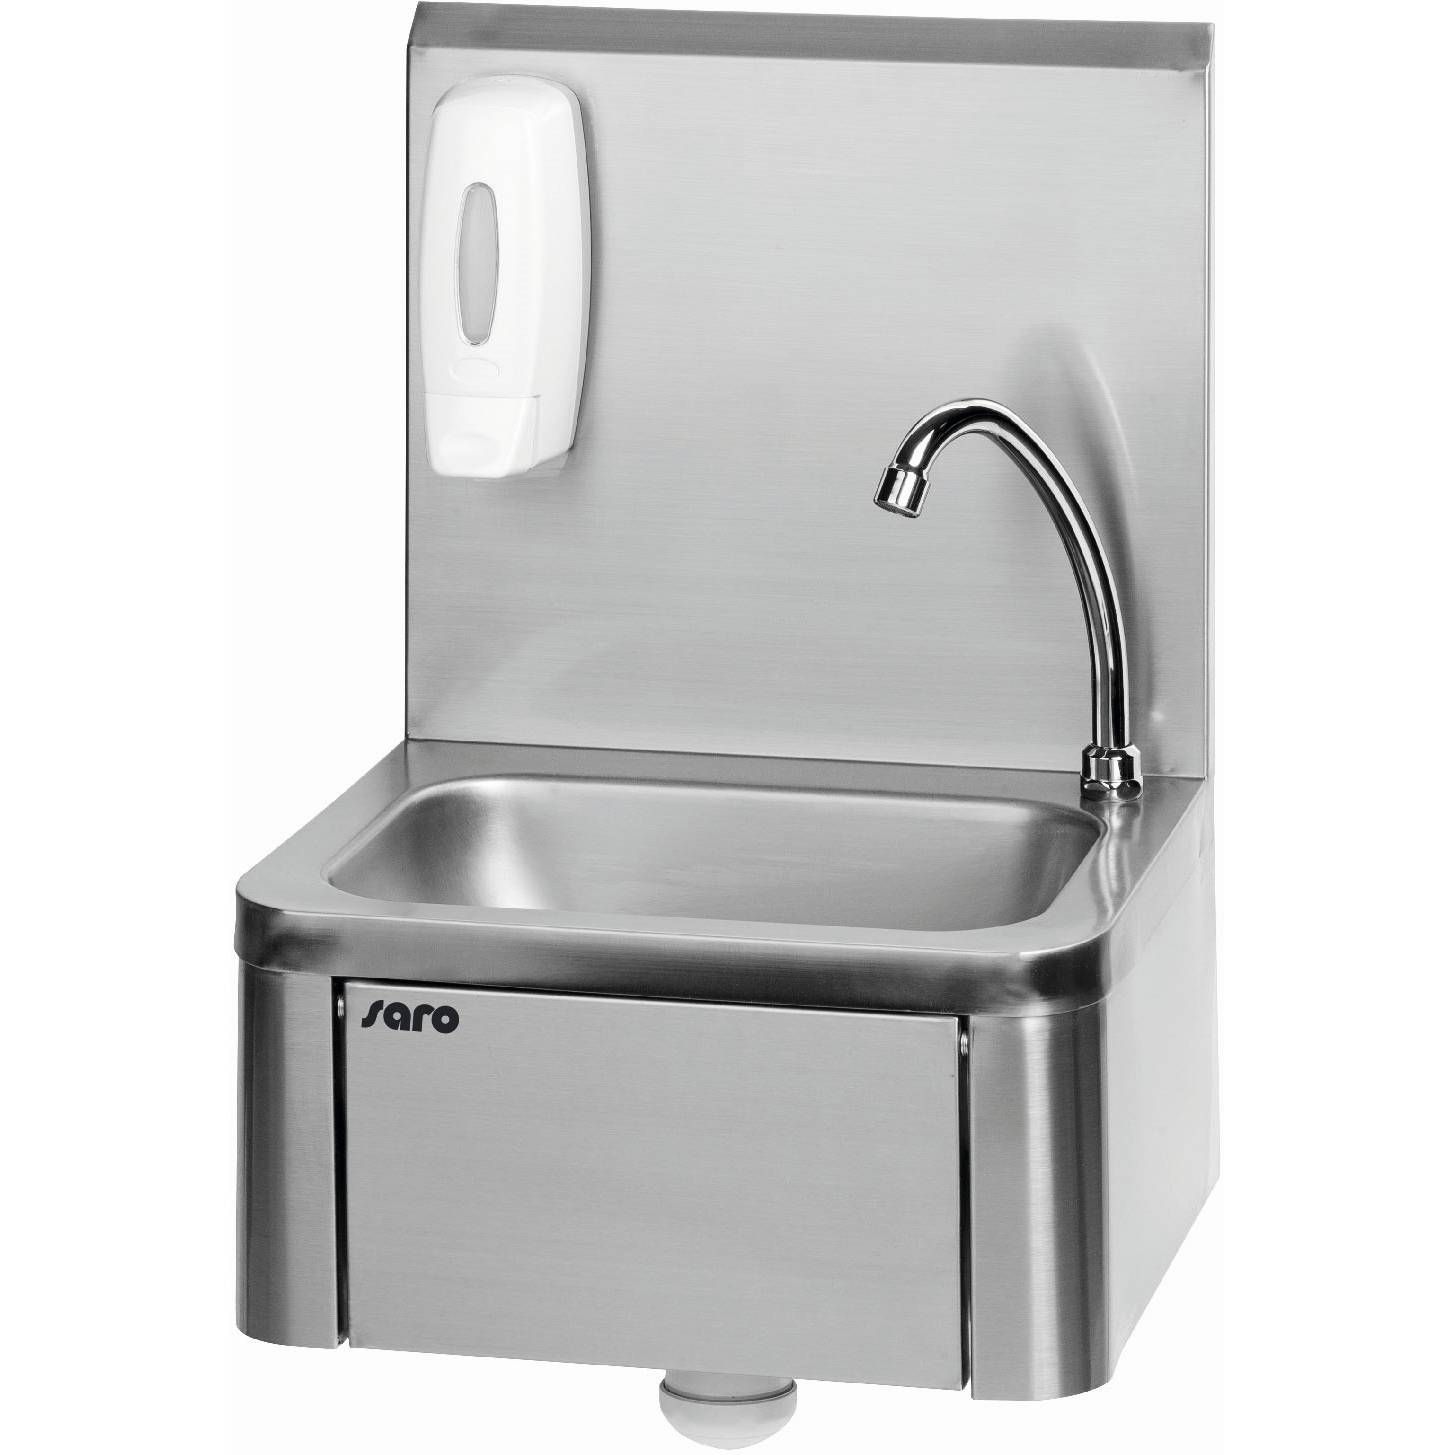 Saro Handwaschbecken Modell KEVIN